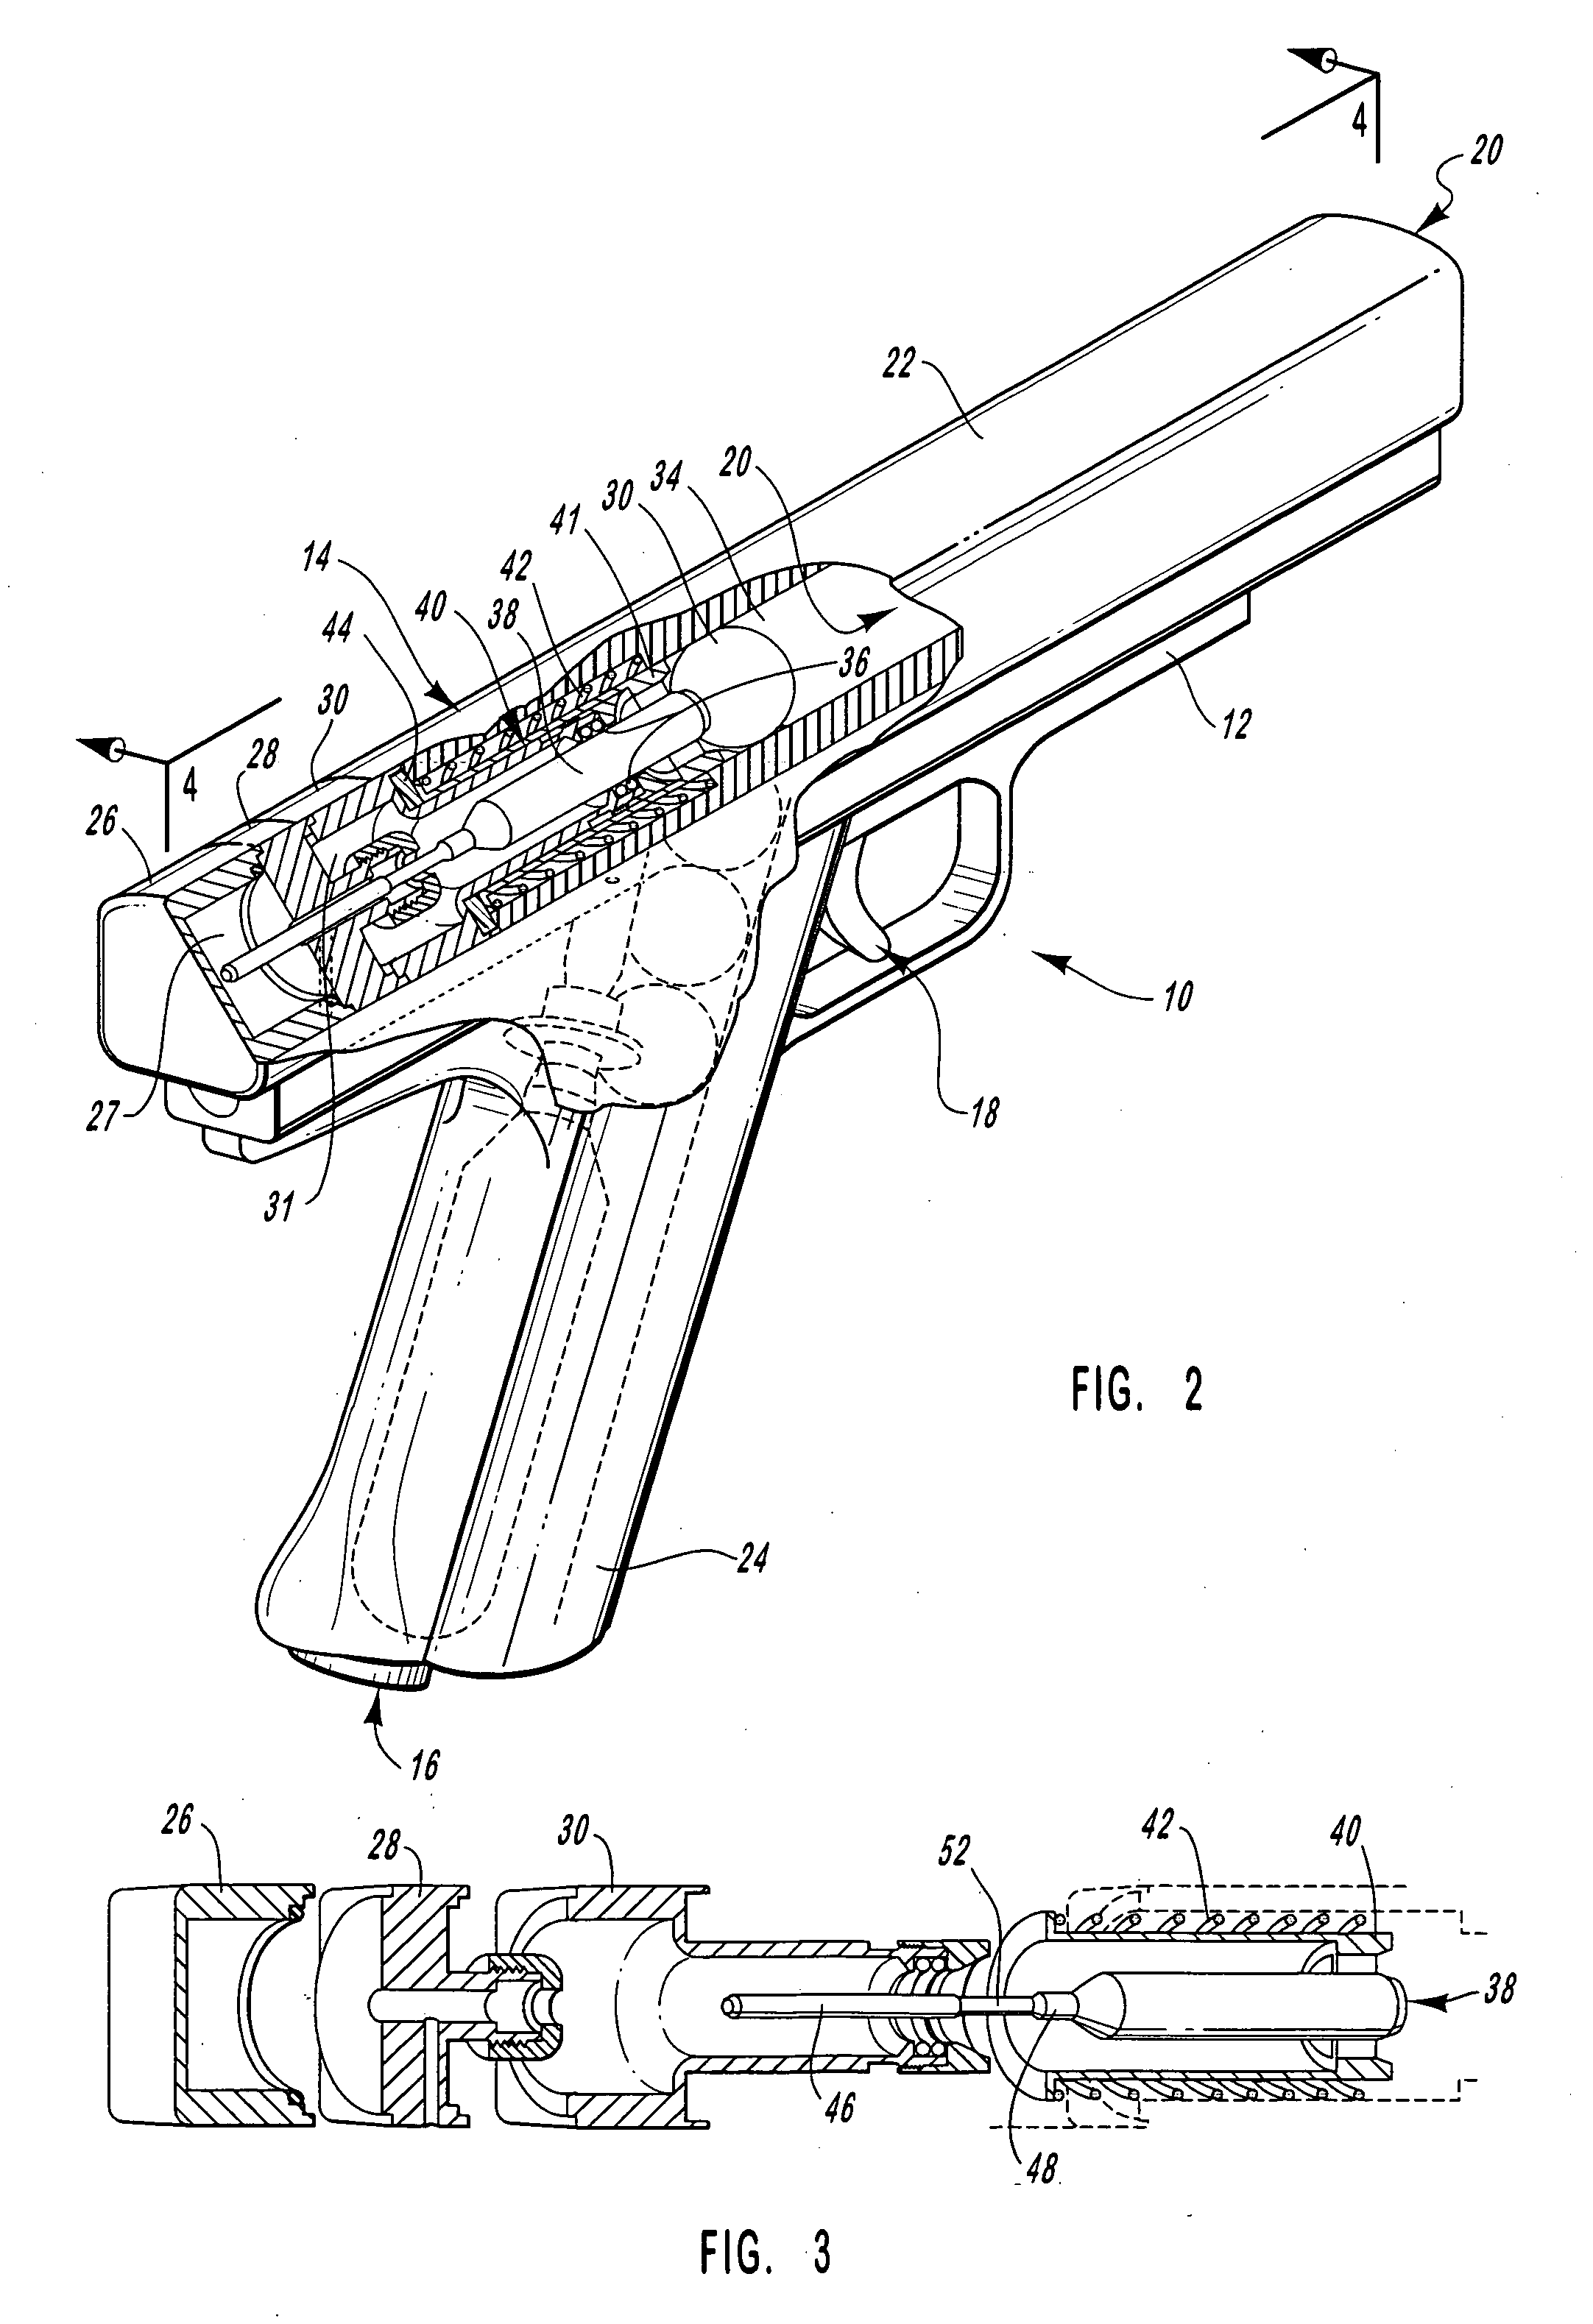 Semi-automatic-firing, compressed-gas gun